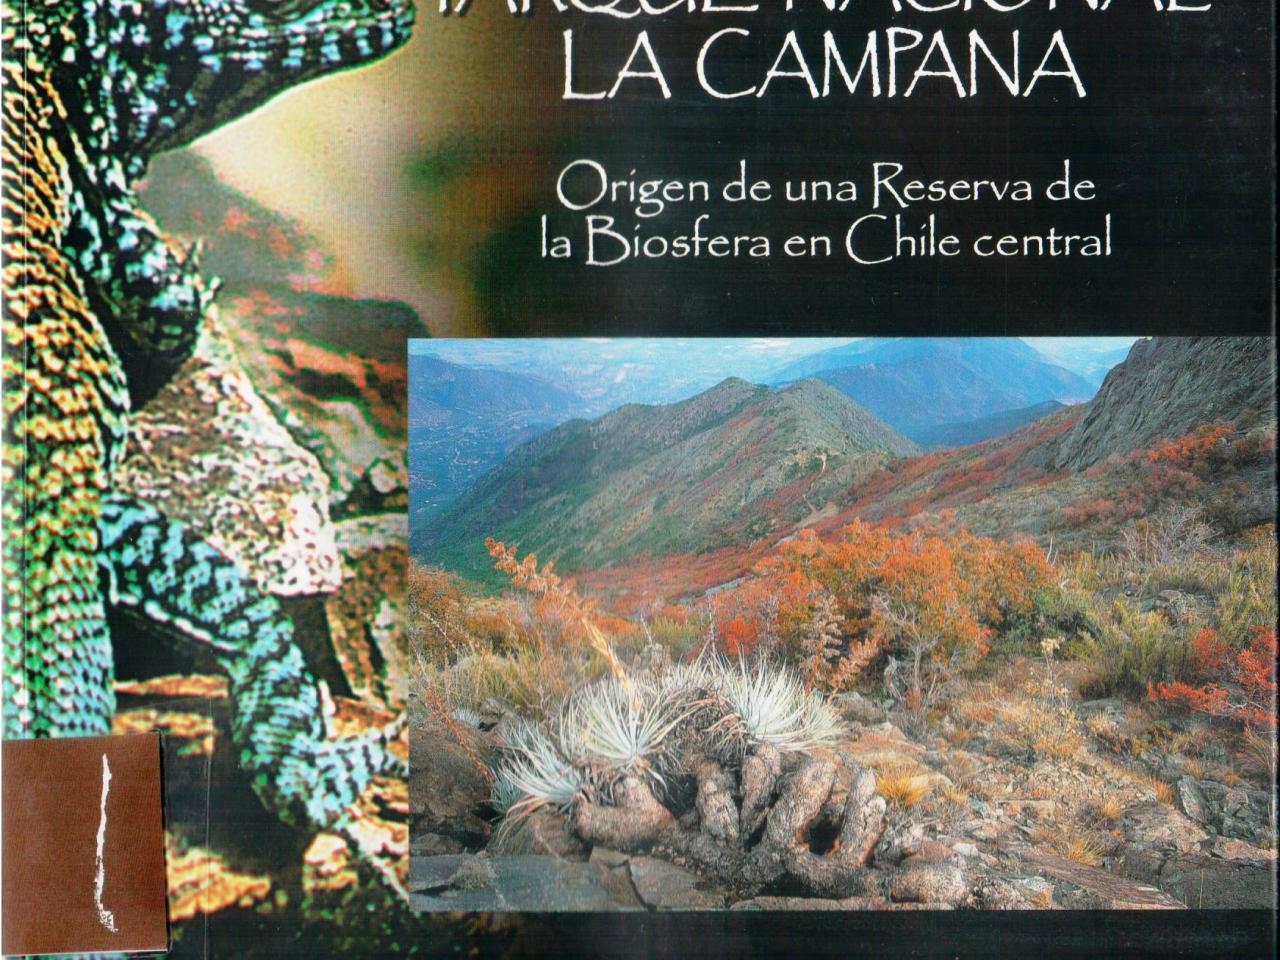 Parque Nacional La Campana, Origen de una reserva de la biosfera central de Chile (2010)